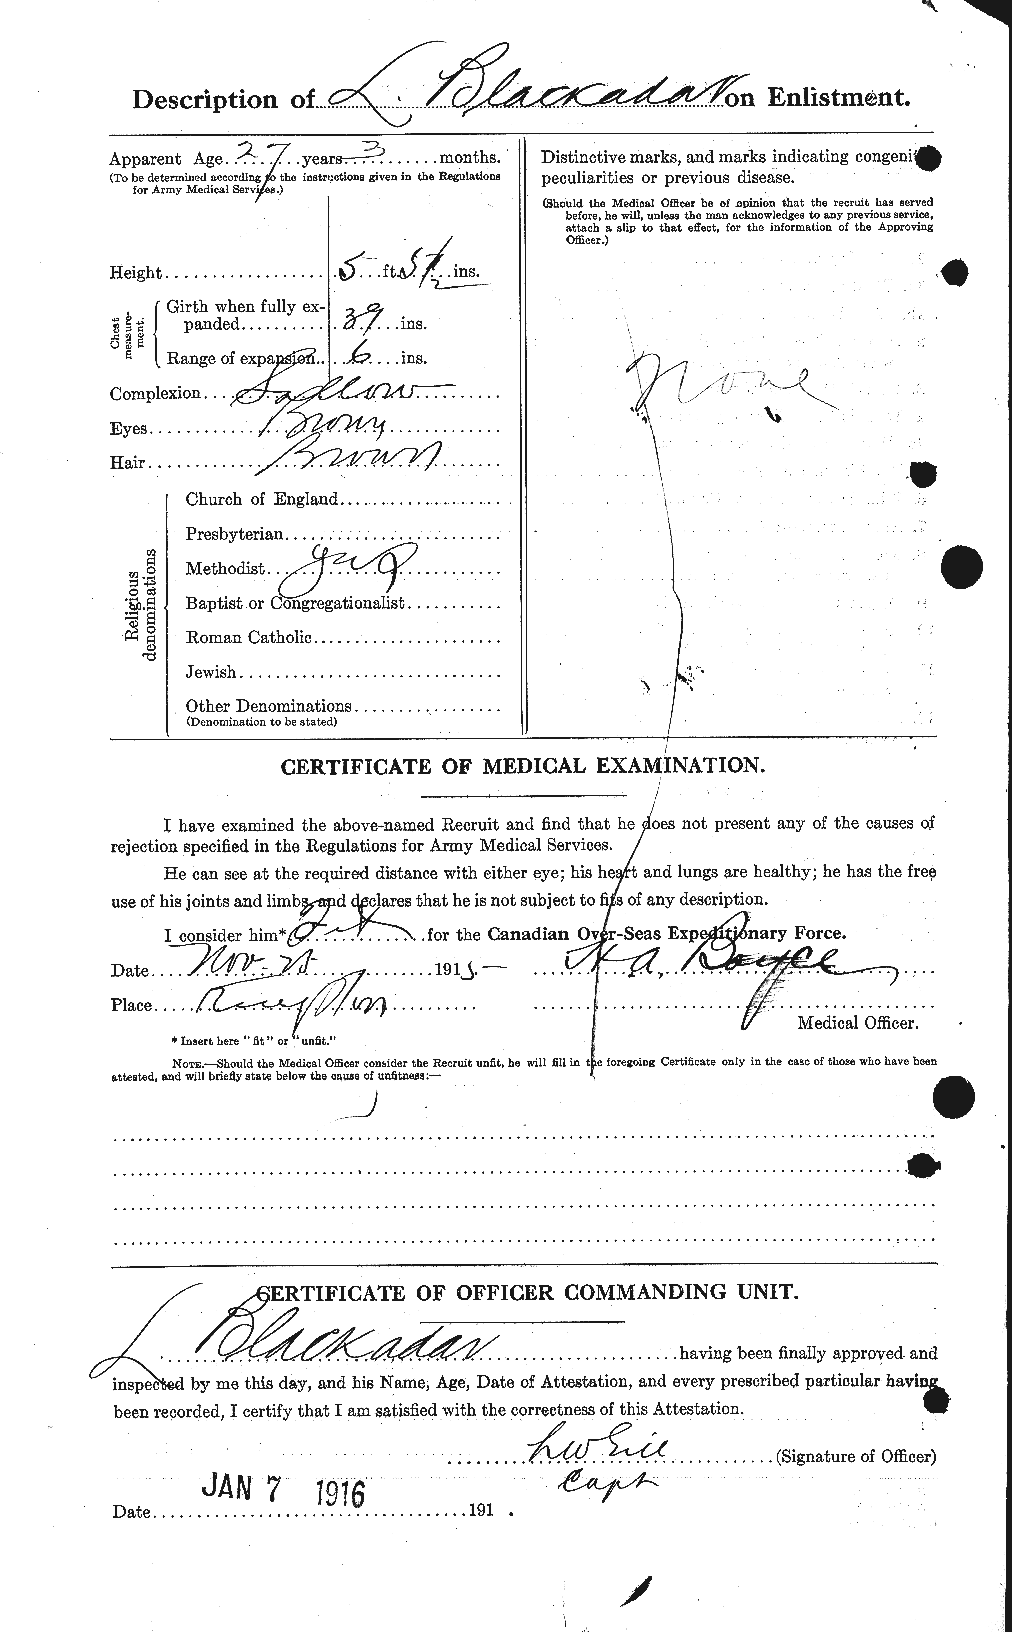 Dossiers du Personnel de la Première Guerre mondiale - CEC 247724b